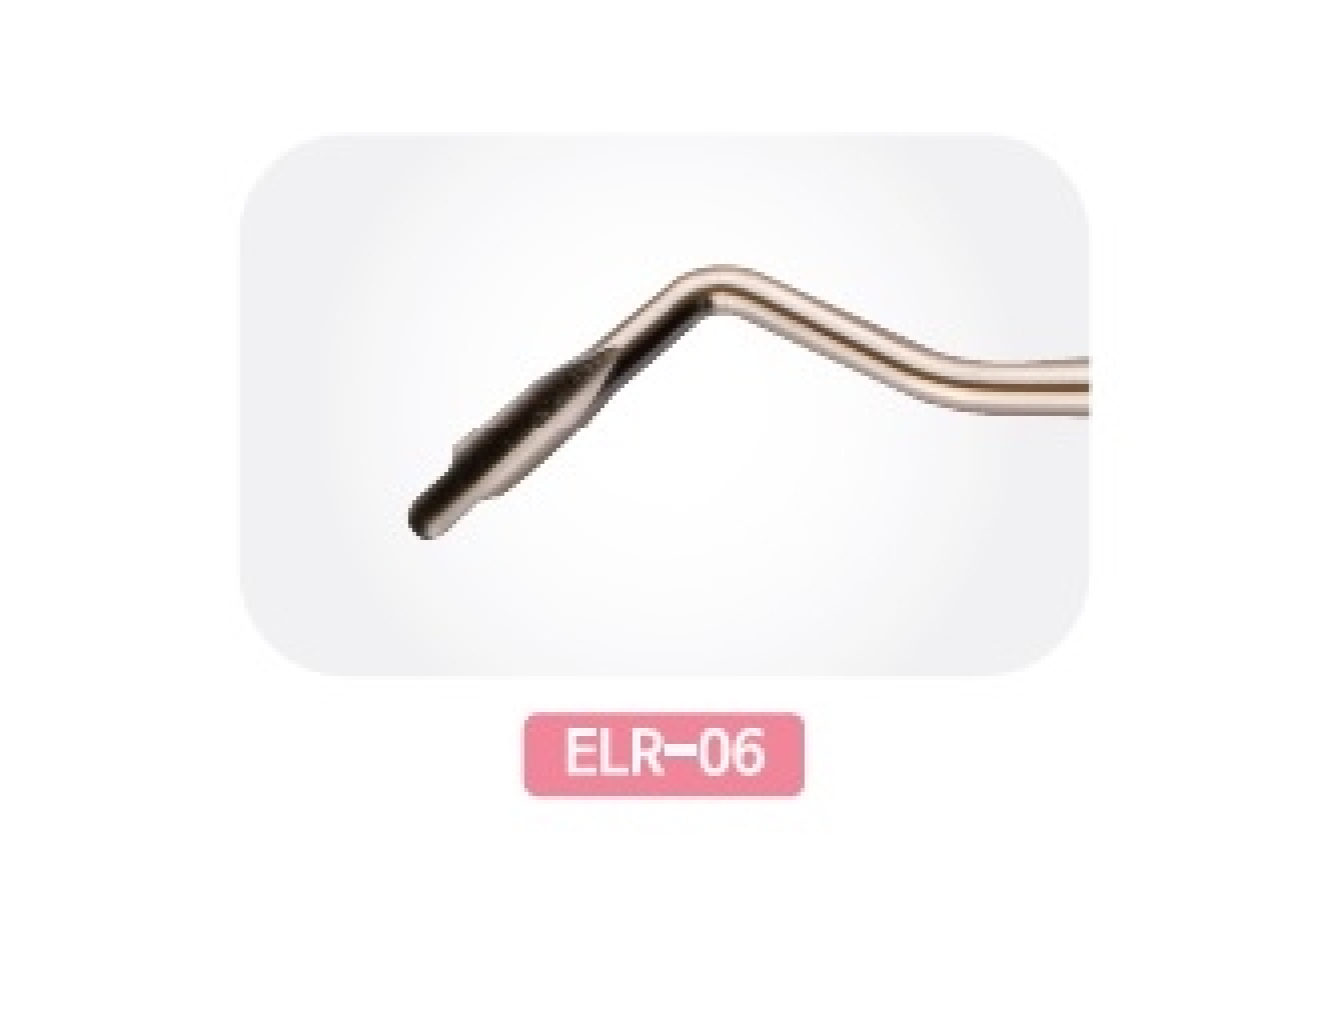 ELR-06 СтоматологическоеСменное лезвие: Люксатор-периотом с двойной кромкой 3,0/4,6 мм правый для жевательных зубов, Mr.Curette Tech, Южная Корея